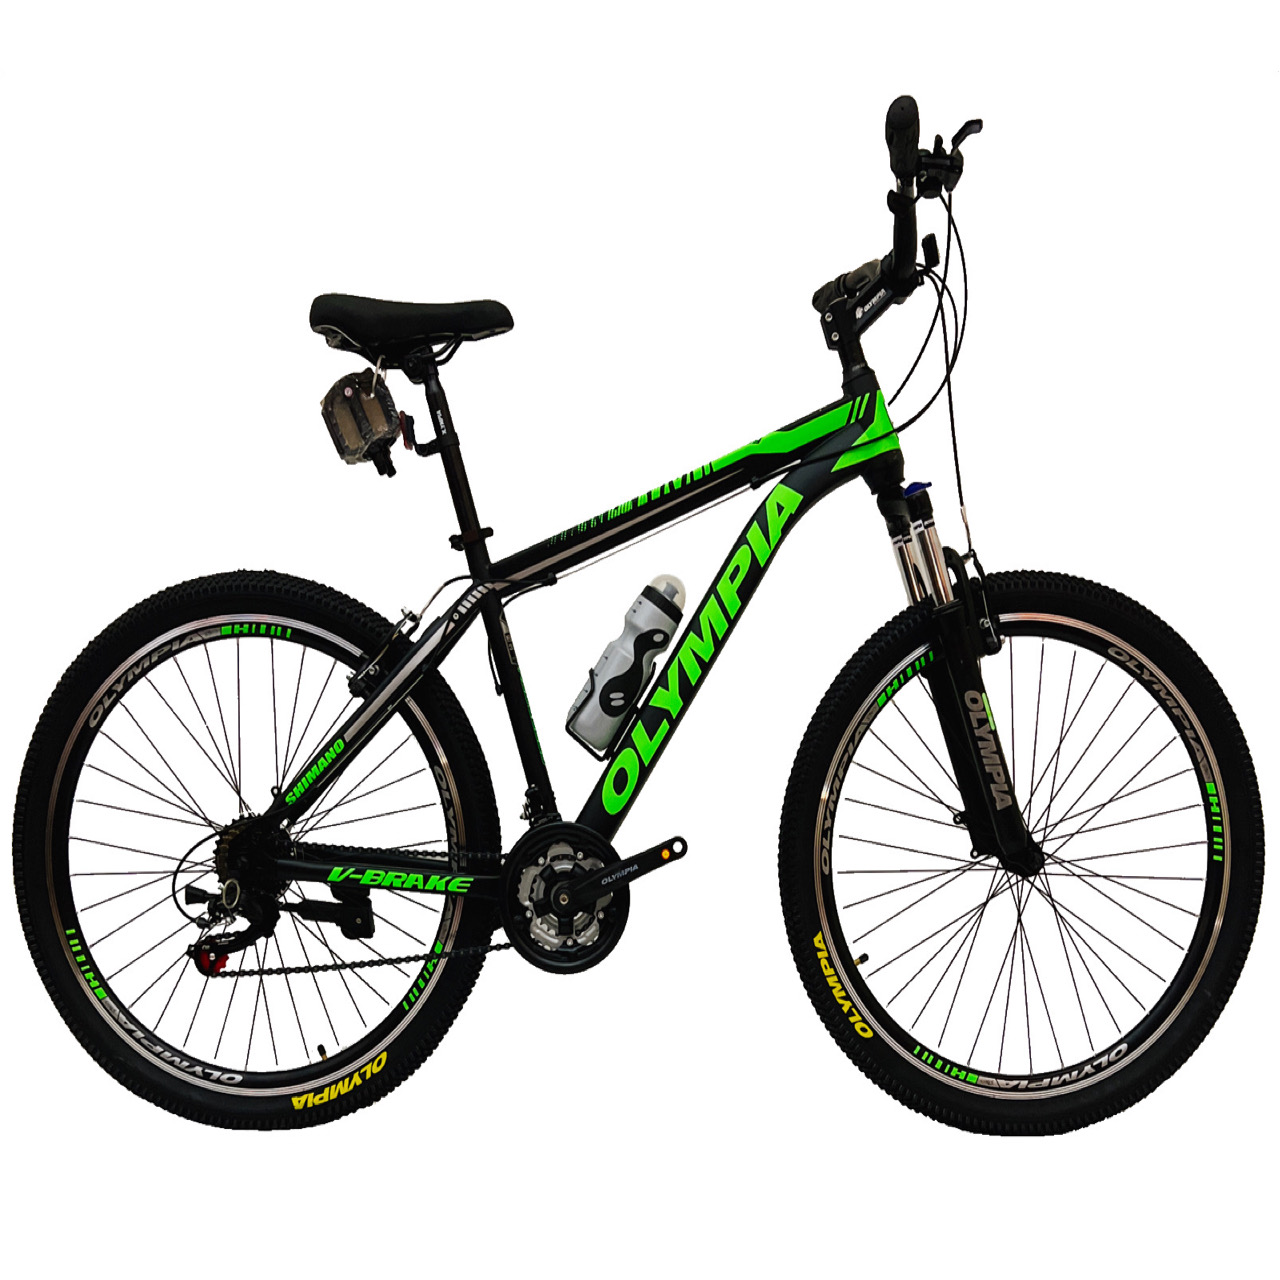 نکته خرید - قیمت روز دوچرخه کوهستان المپیا مدل NEW GELLY سایز 27.5 خرید